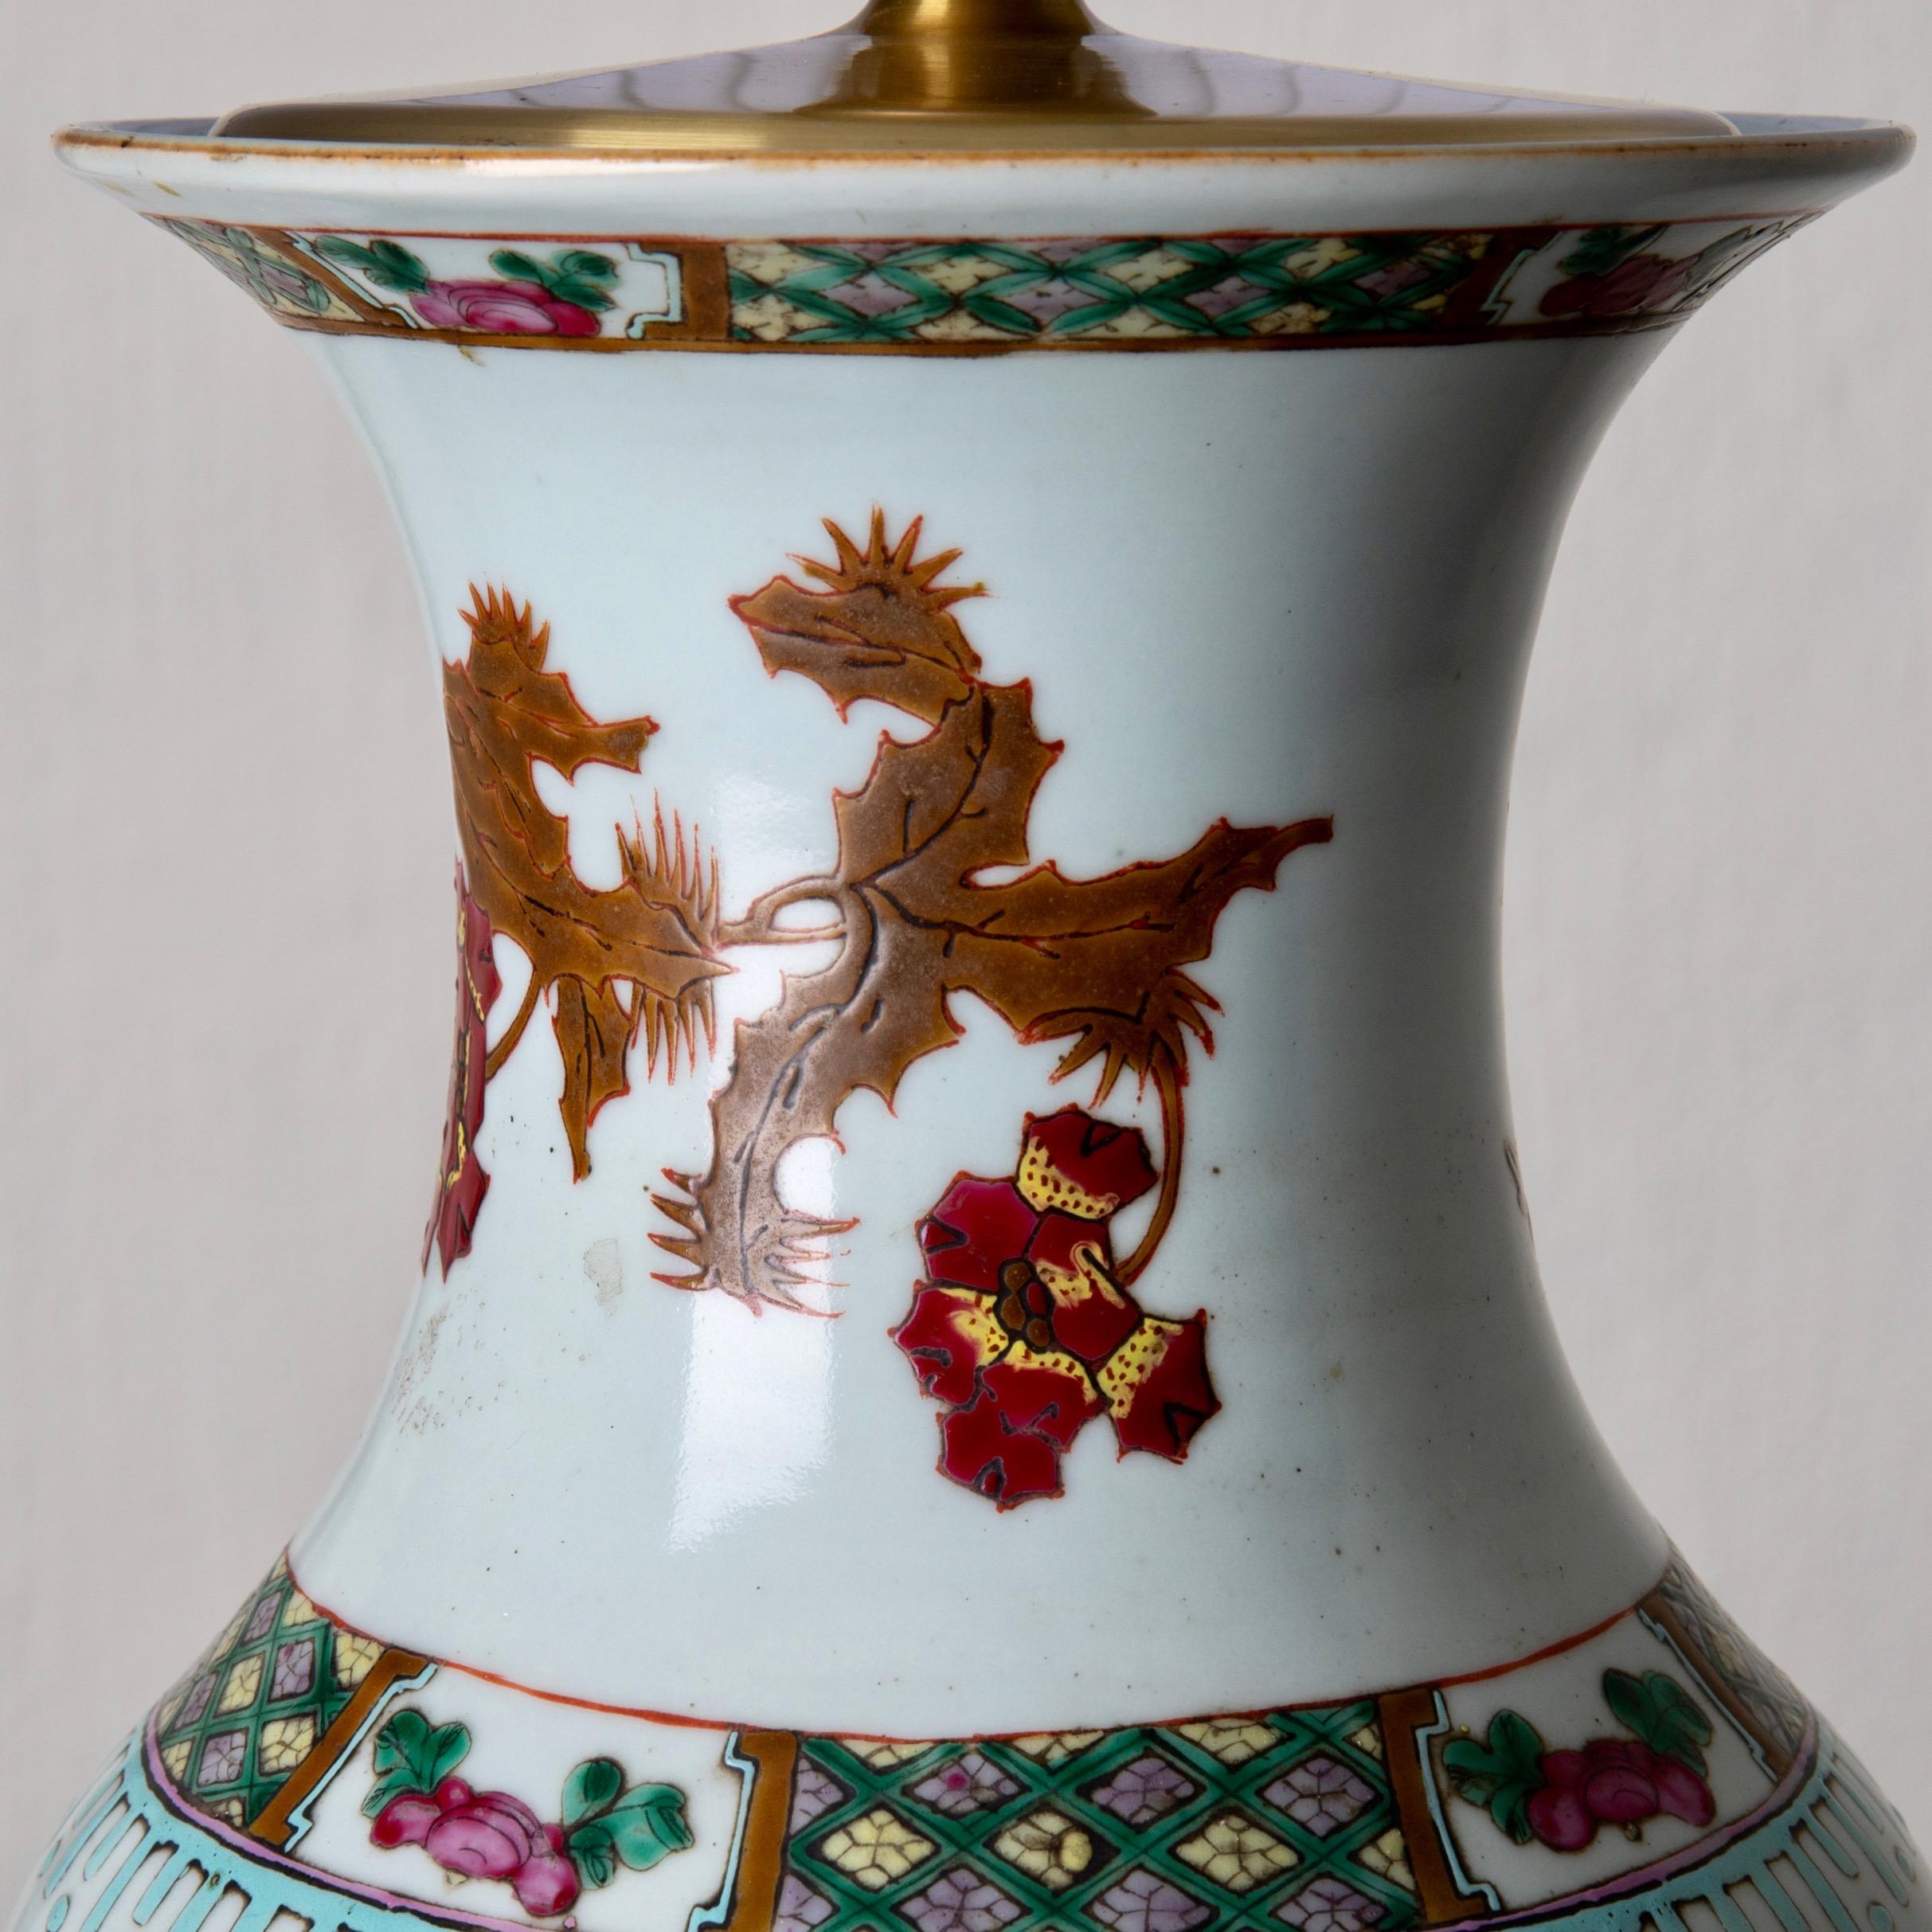 Lampe de table orientale blanc rouge fleurs années 1920, Chine. Lampe de table en porcelaine blanche avec motif floral rouge. Mesures : H avec abat-jour 29